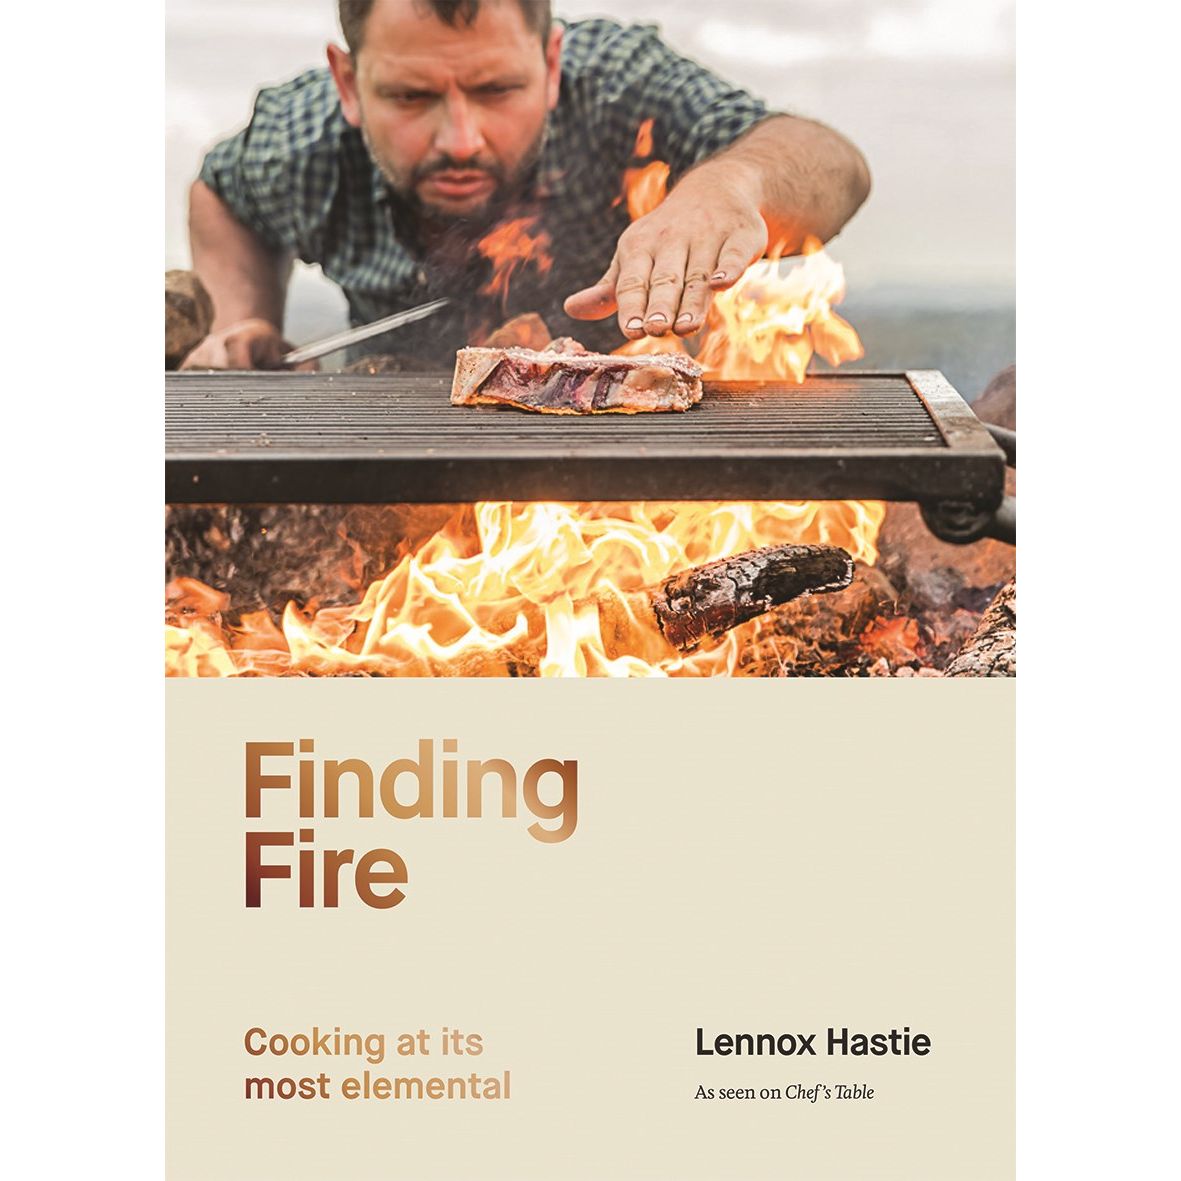 Finding Fire (Lennox Hastie)